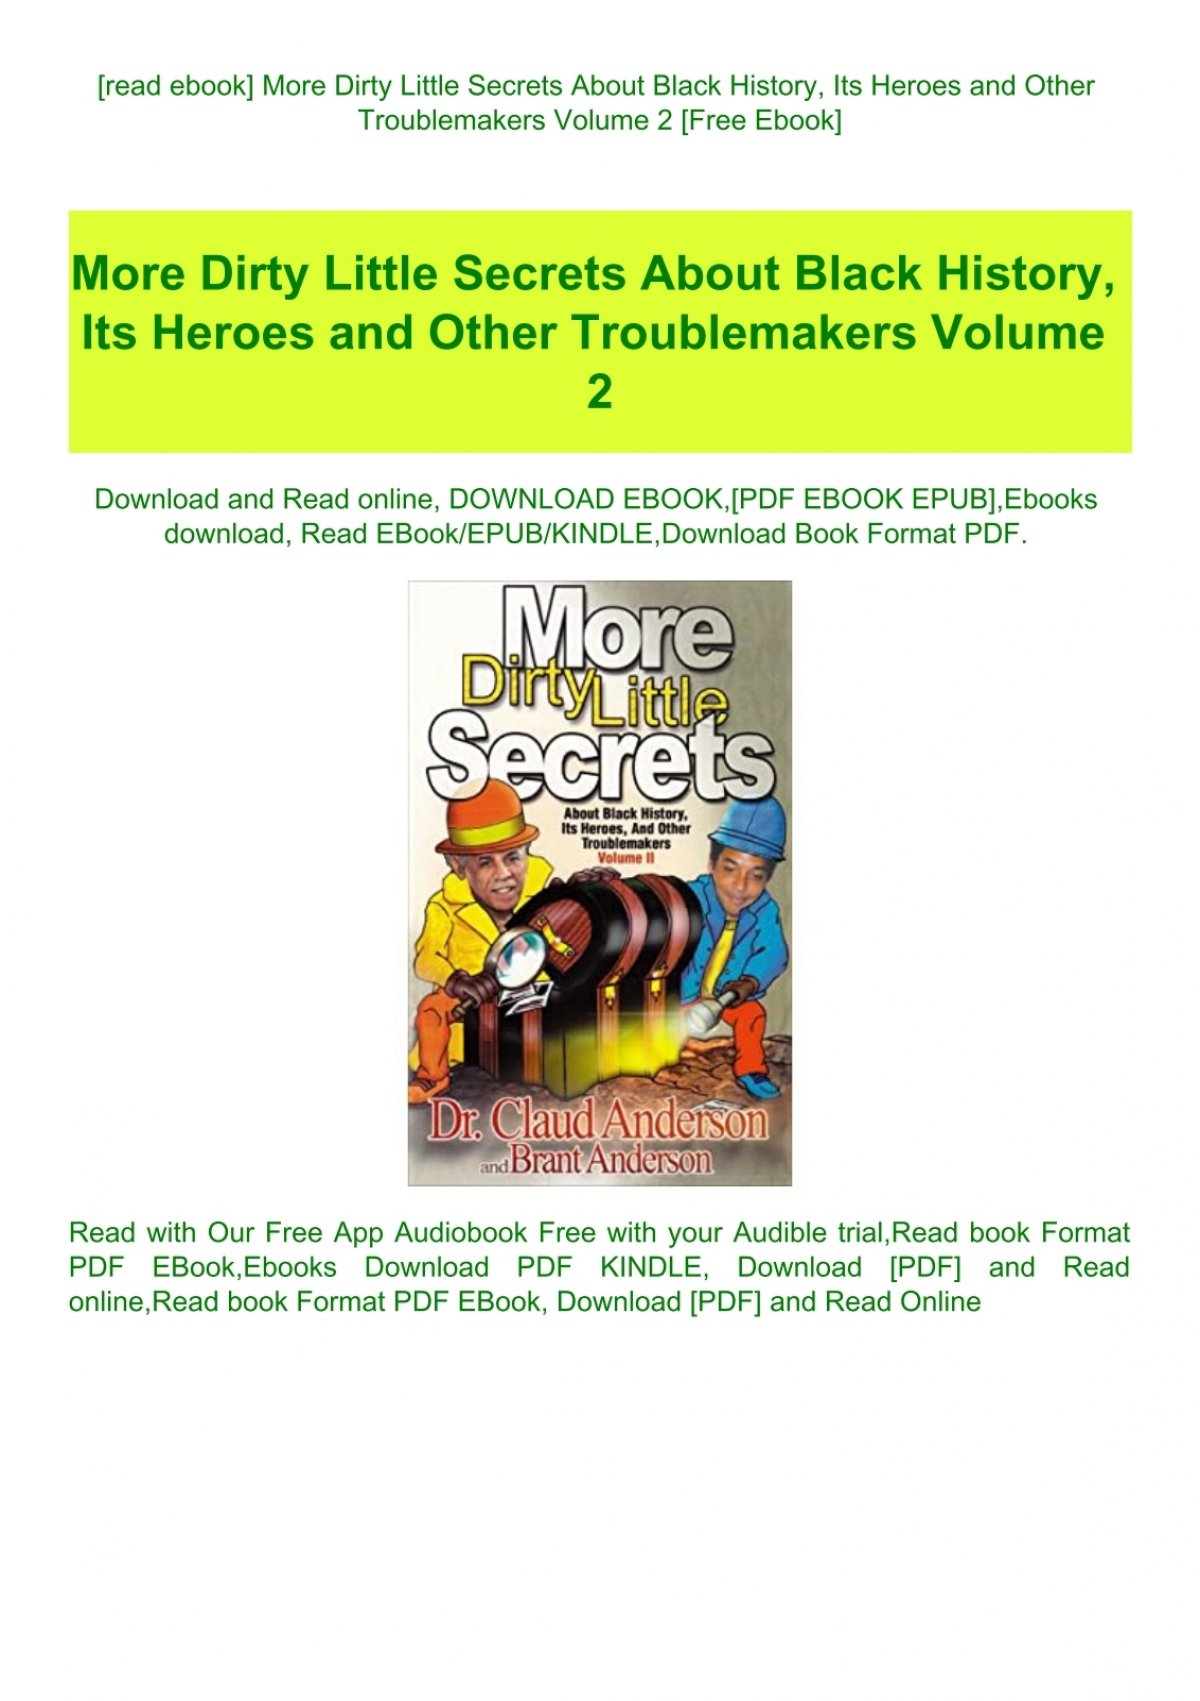 Dirty Little Secrets Download Free Ebook